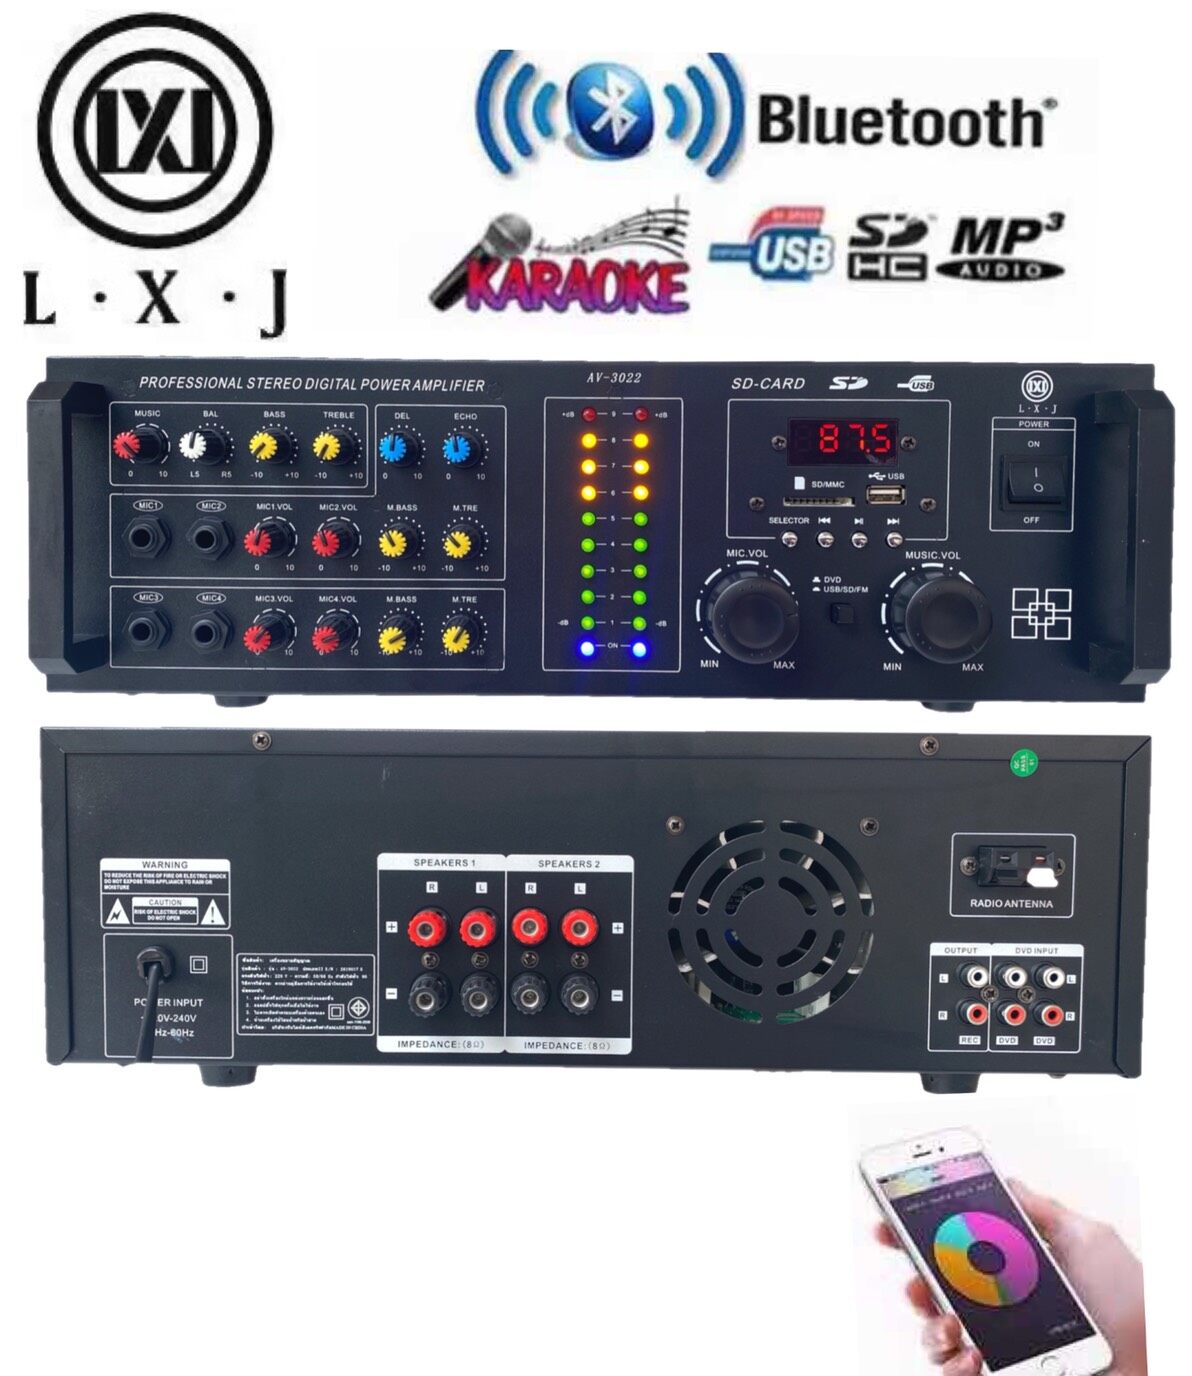 LXJ เครื่องแอมป์ขยายเสียง BLUETOOTH คาราโอเกะ เพาเวอร์มิกเซอร์ USB MP3 SD CARD(LXJ AV-3022))